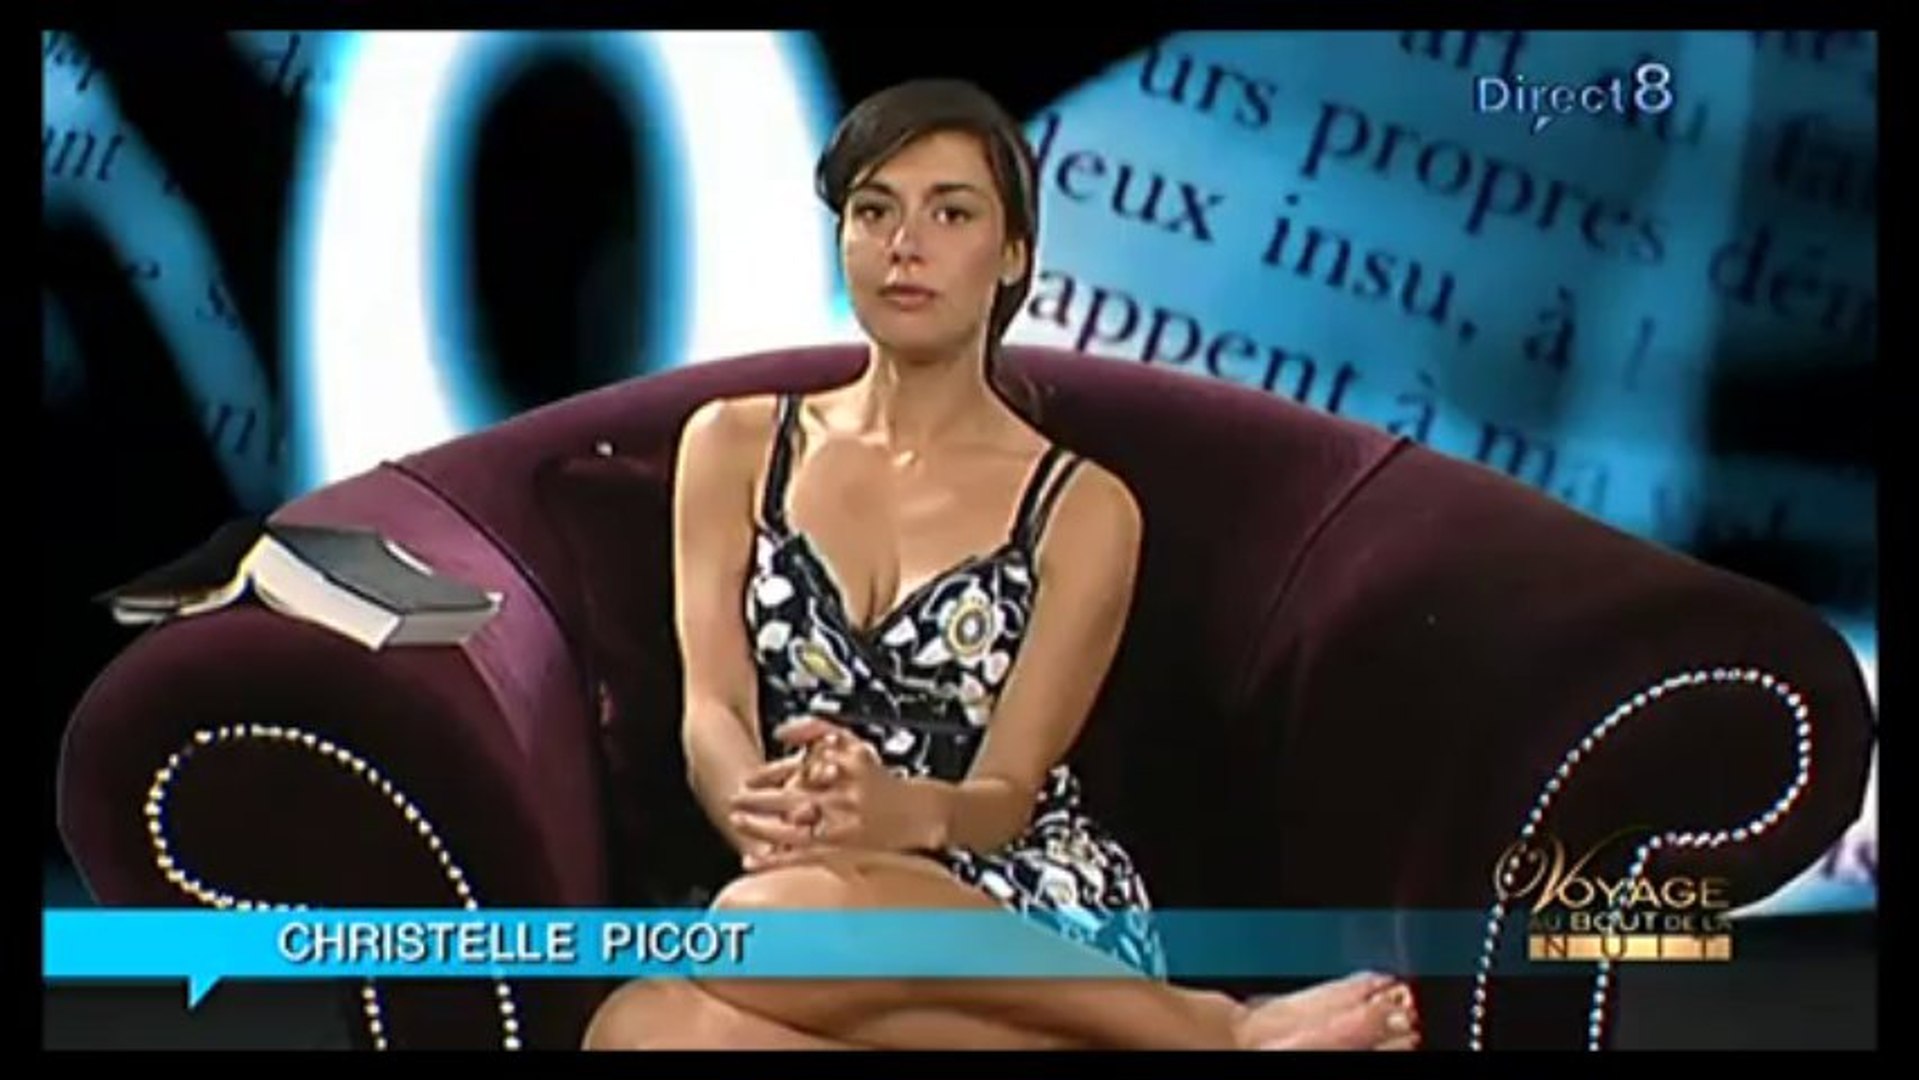 Christelle picot vimeo